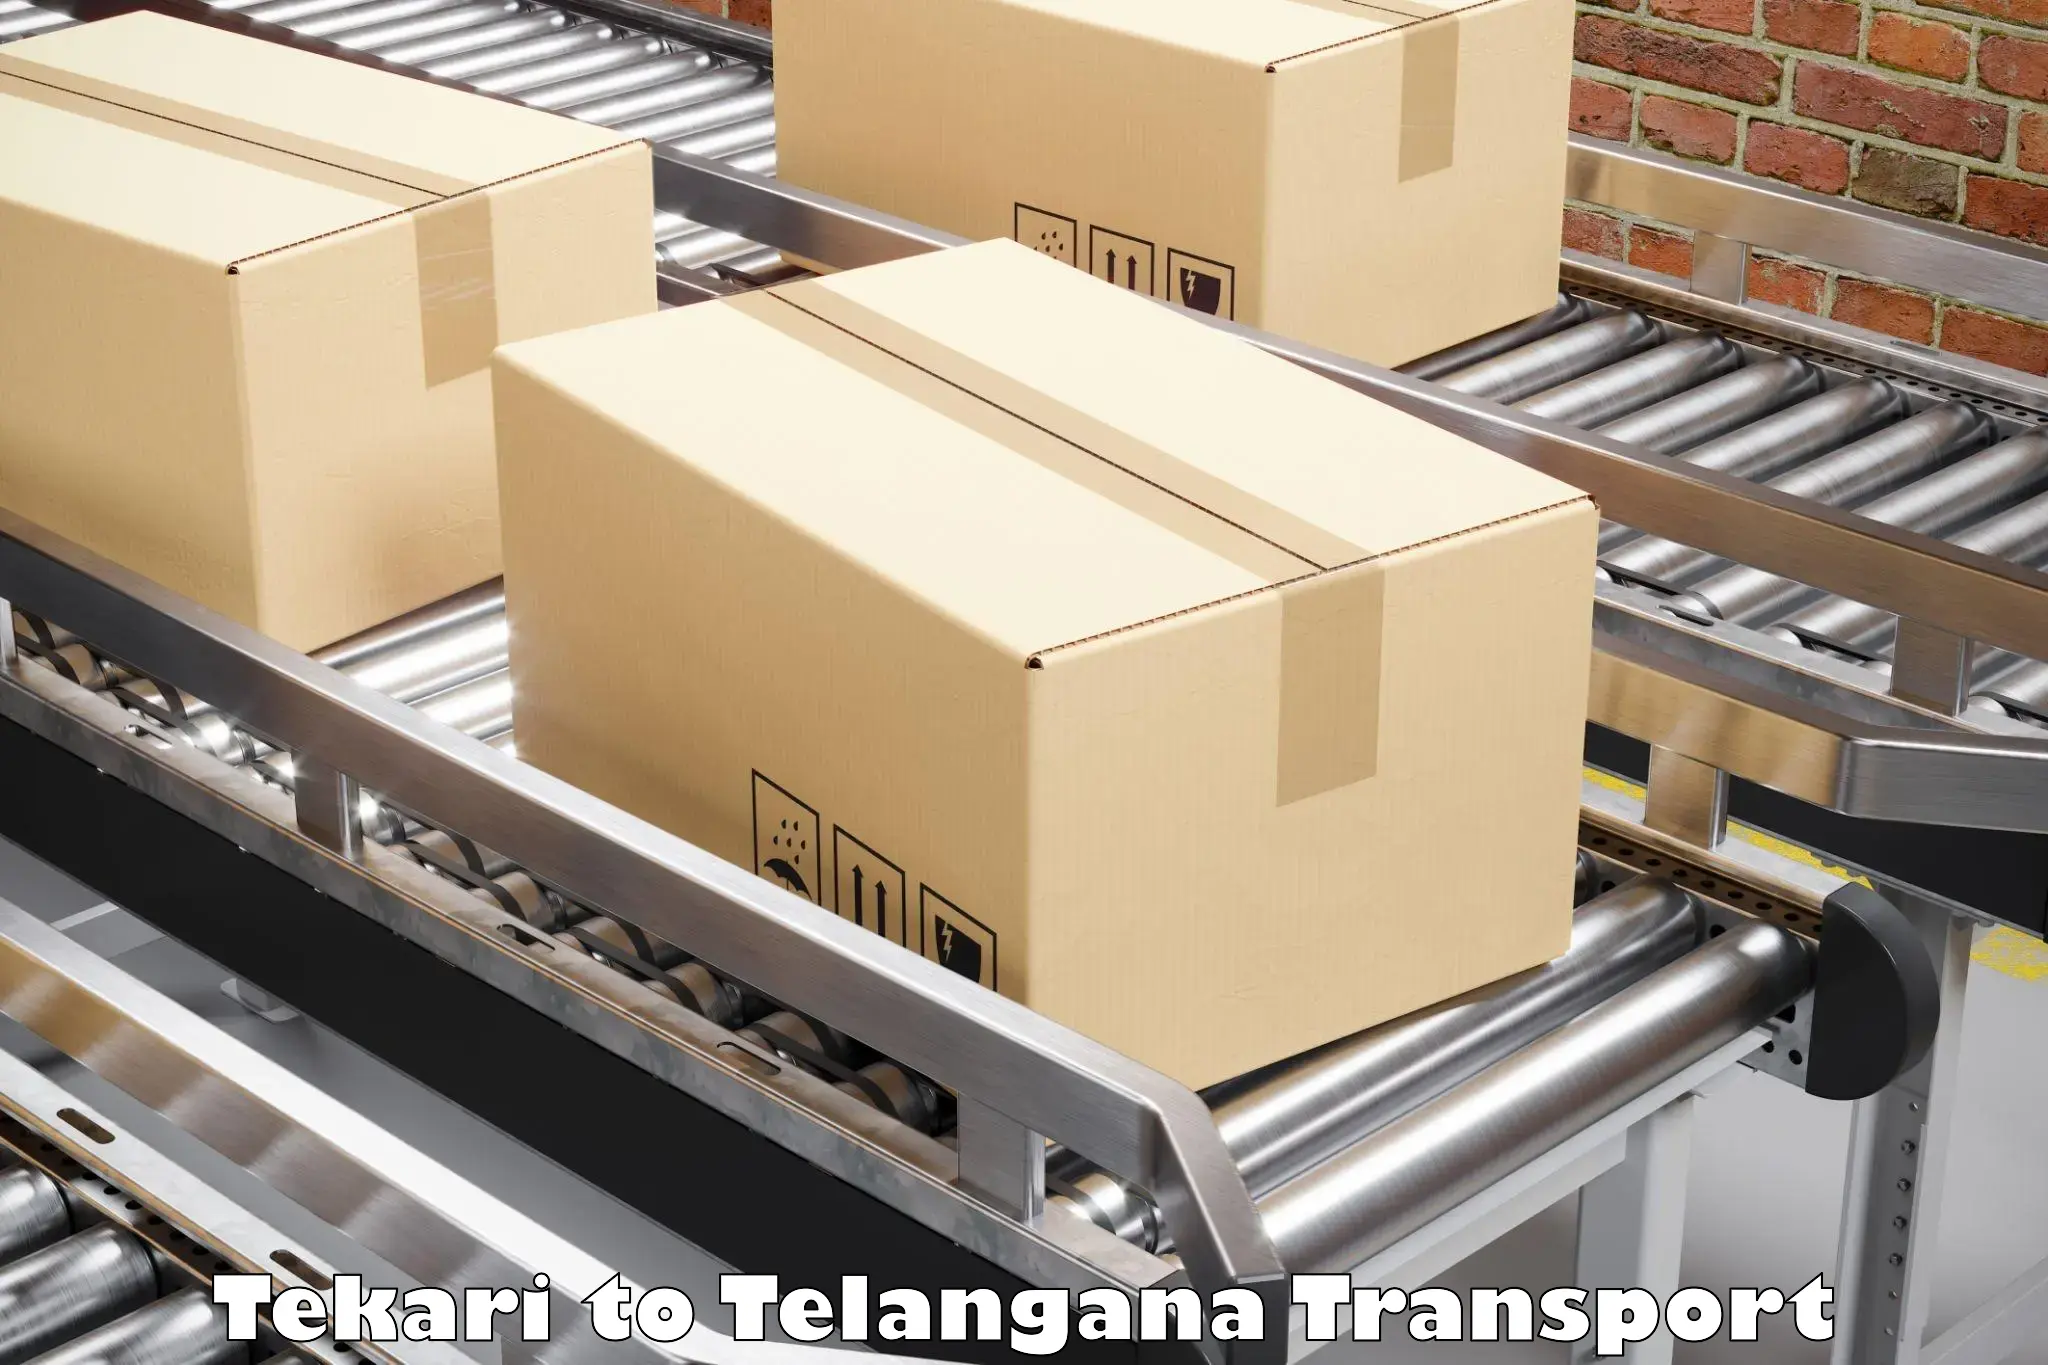 Transport in sharing in Tekari to Devarakonda